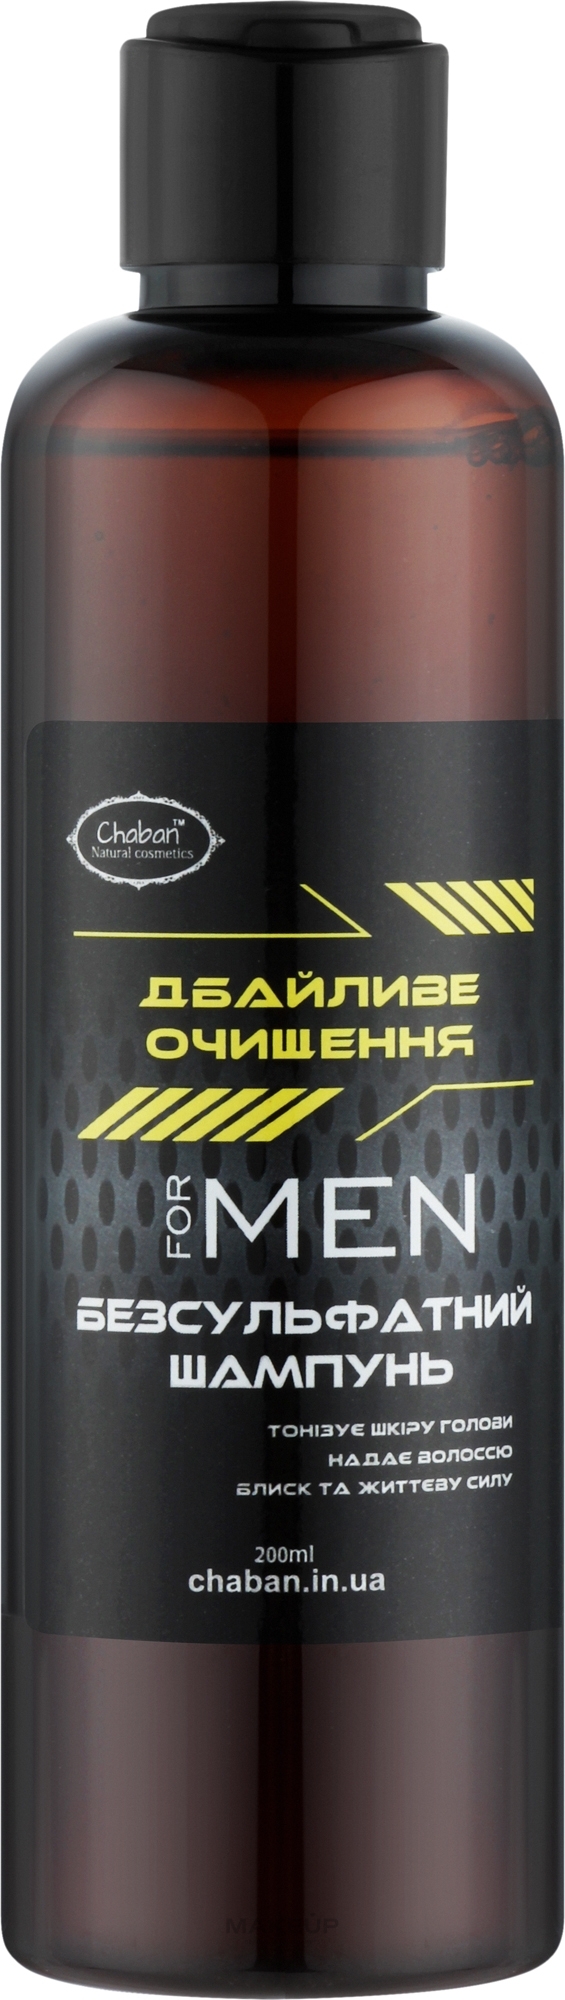 Чоловічий безсульфатний шампунь для дбайливого очищення - Chaban Natural Cosmetics — фото 200ml